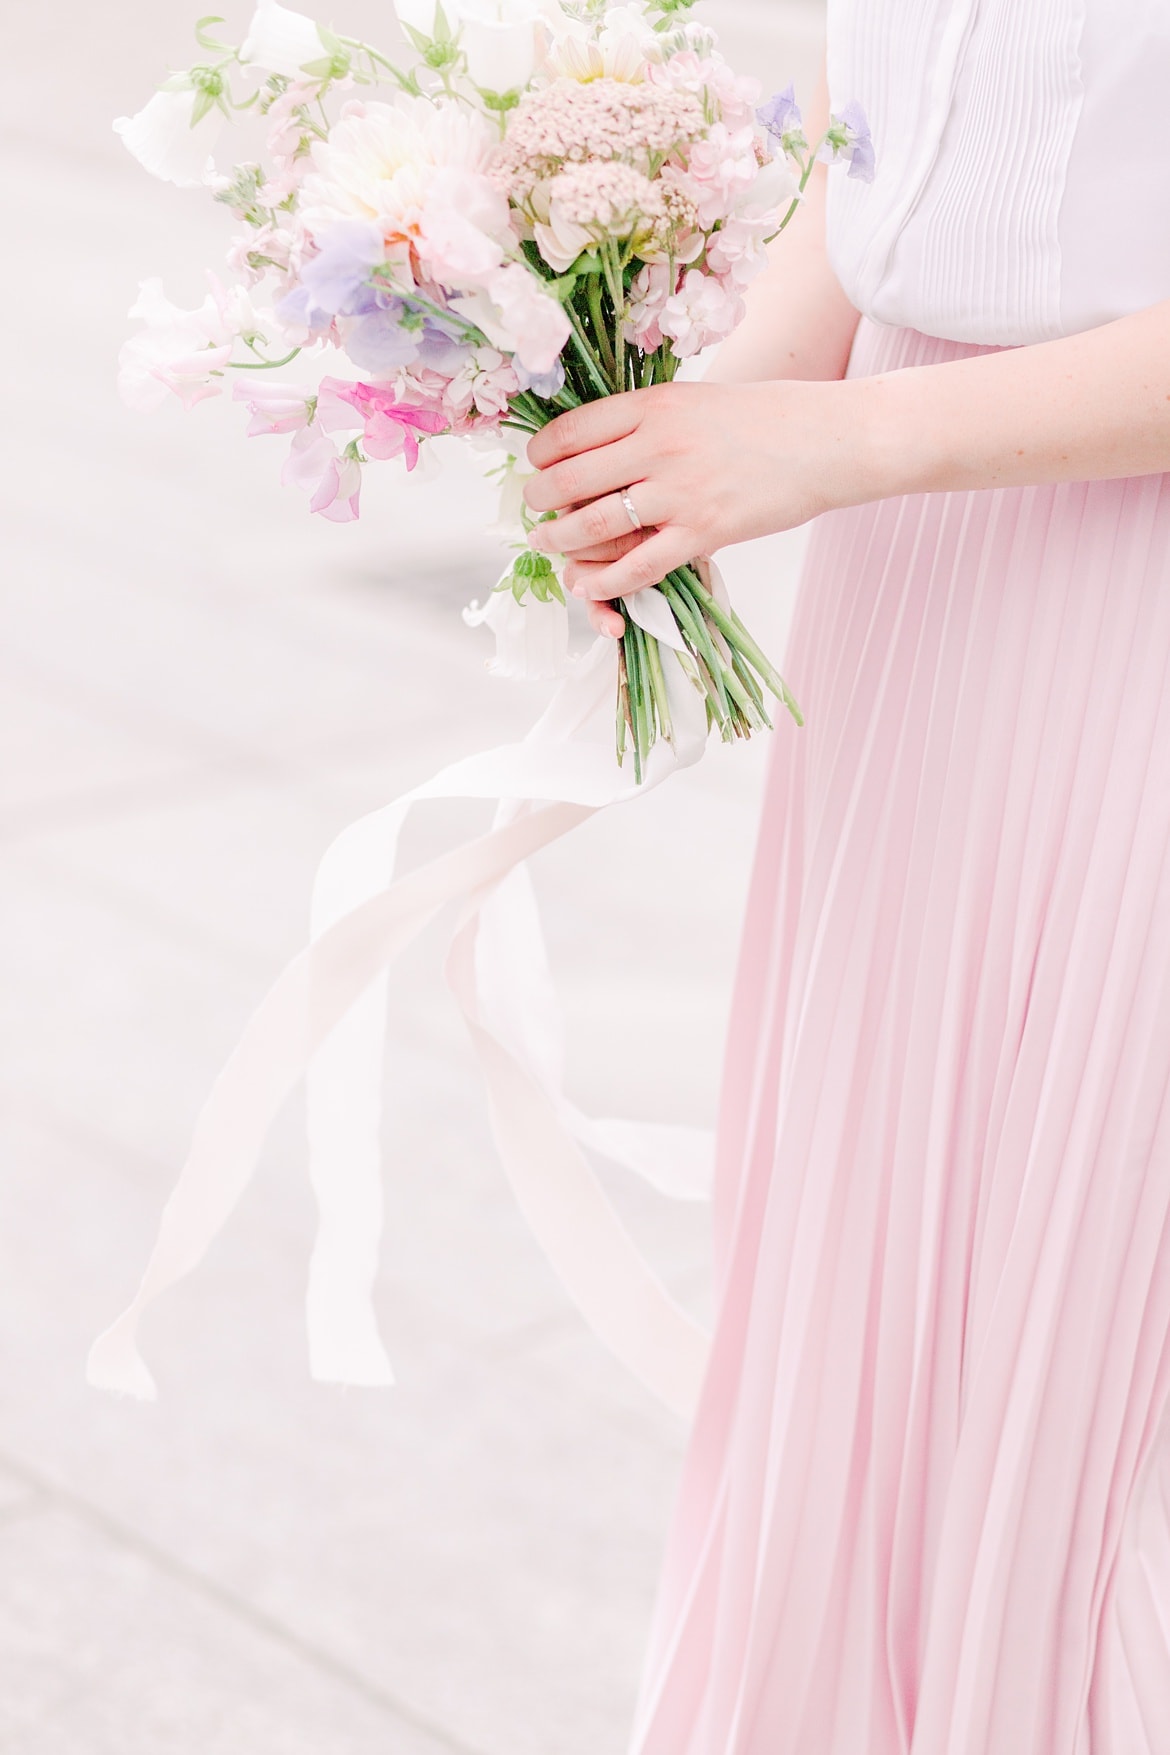 Eine Frau hält einen Blumenstrauß. Sie trägt einen rosa Rock.